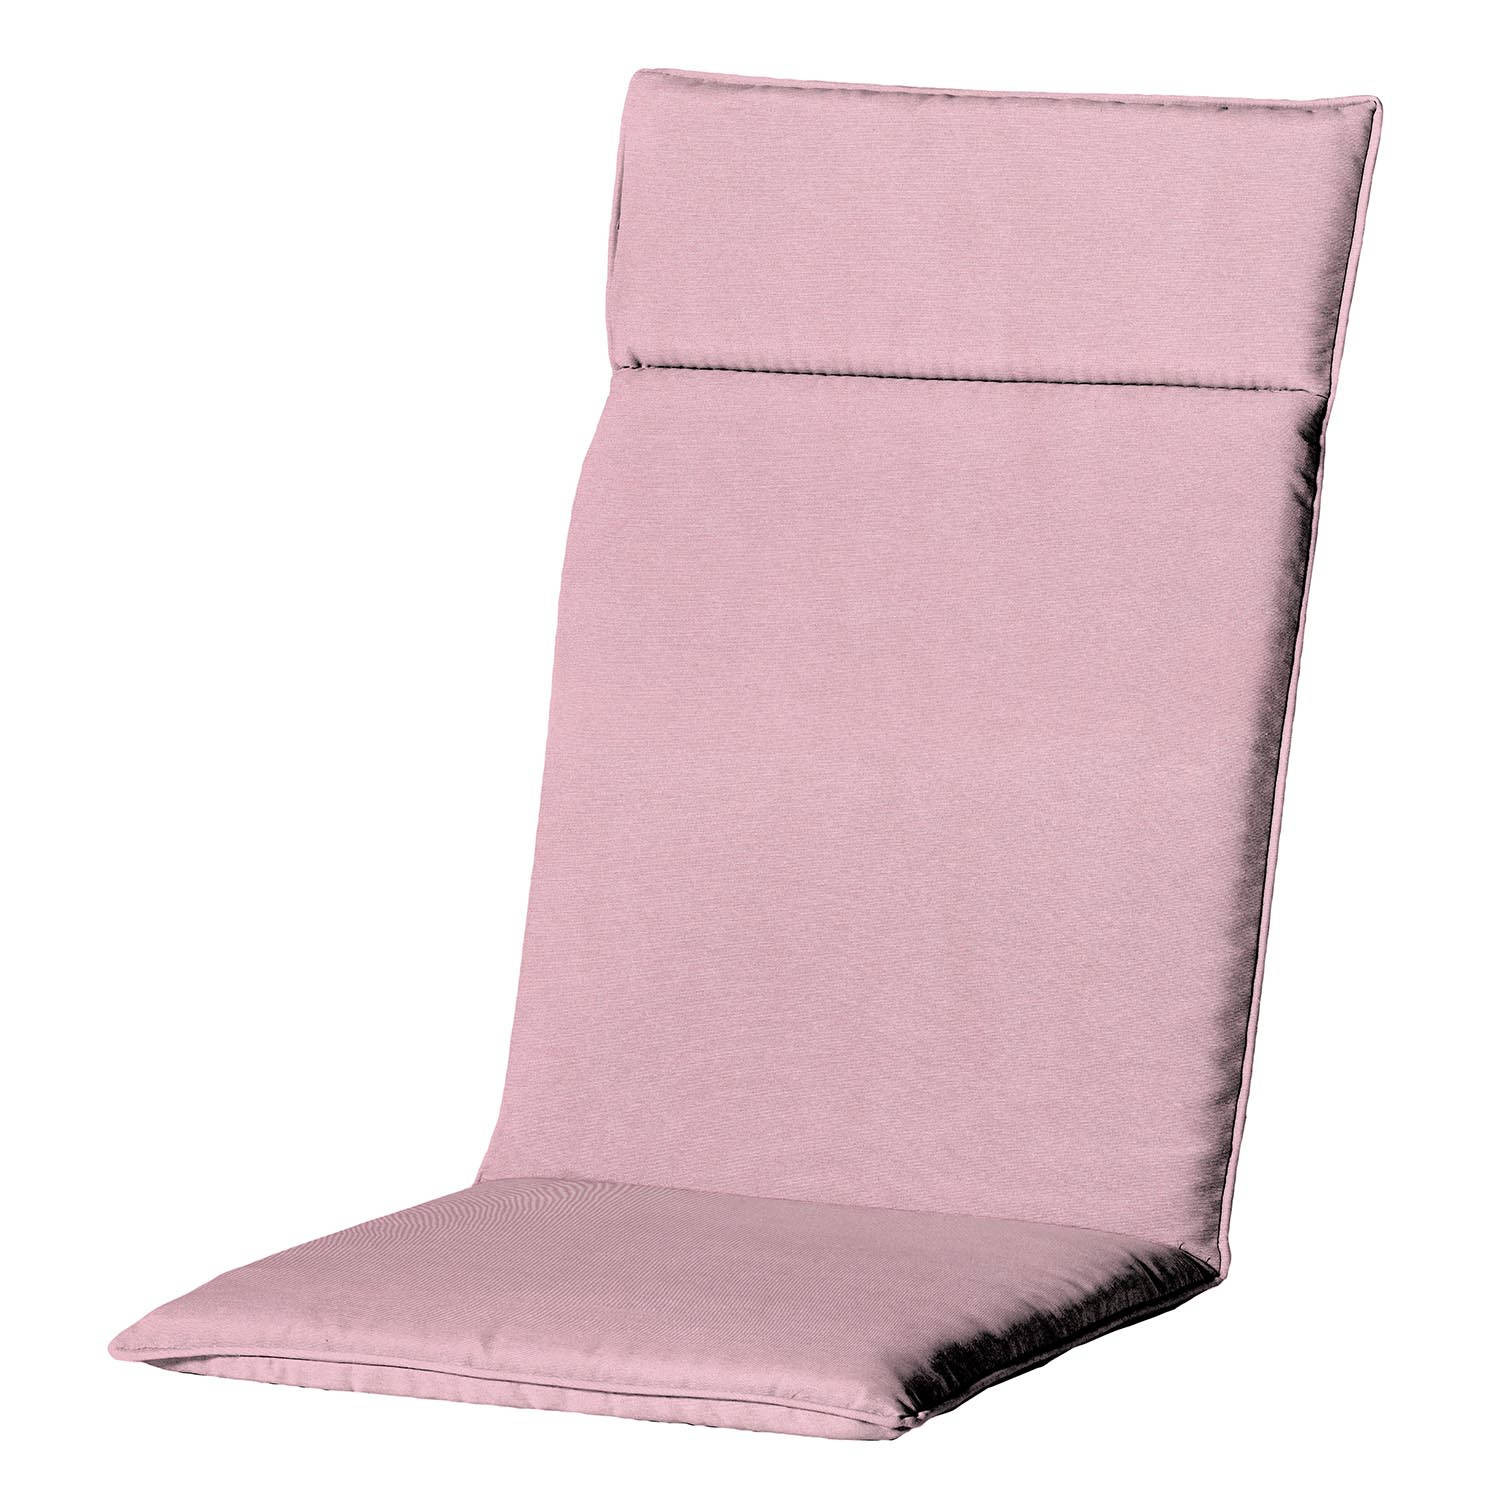 Madison - Hoge rug - Panama soft pink - 120x50 - Roze